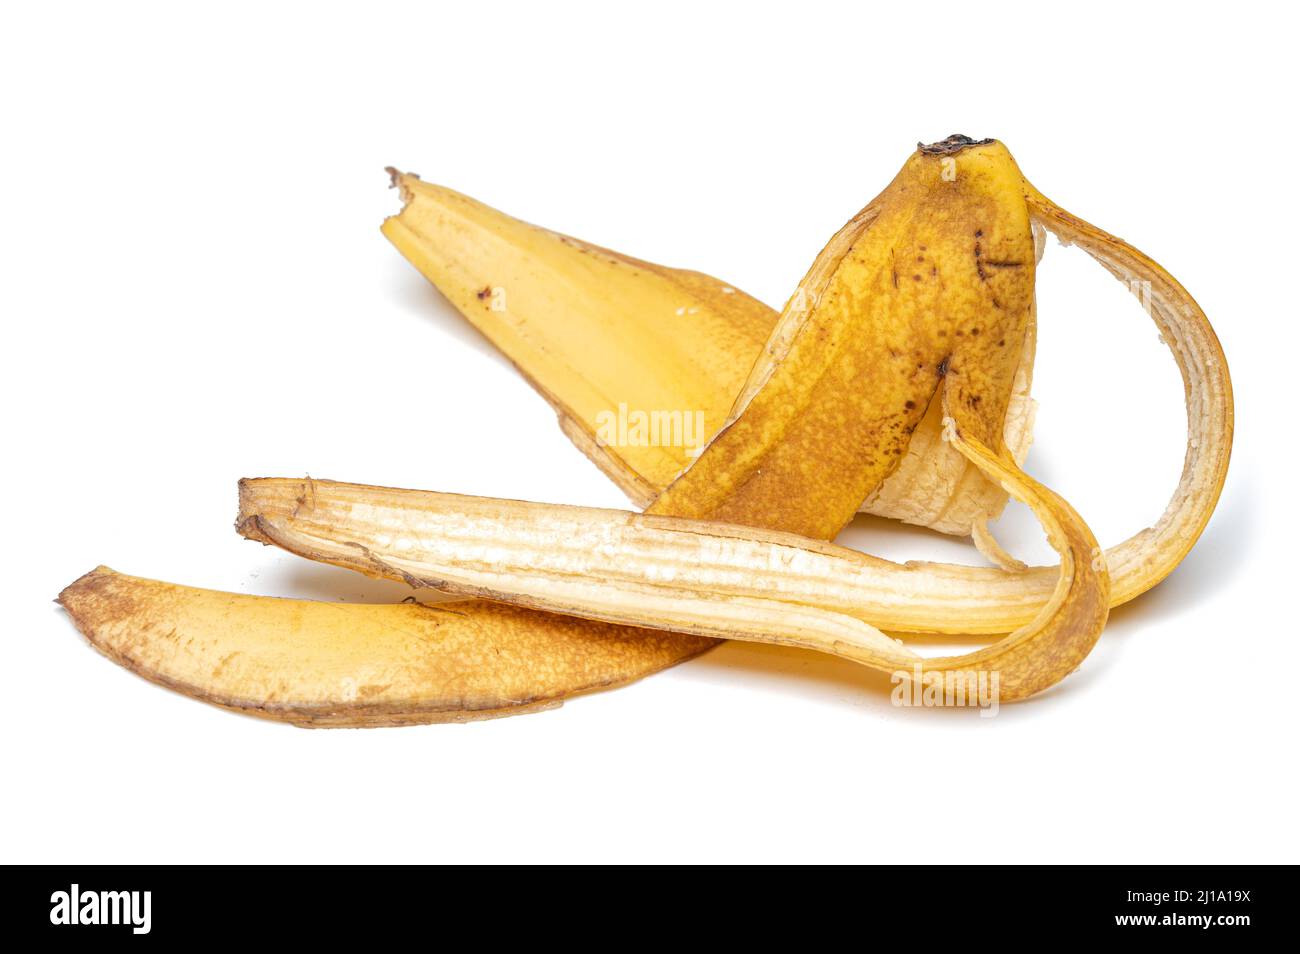 Banana peel isolated on white background. Stock Photo